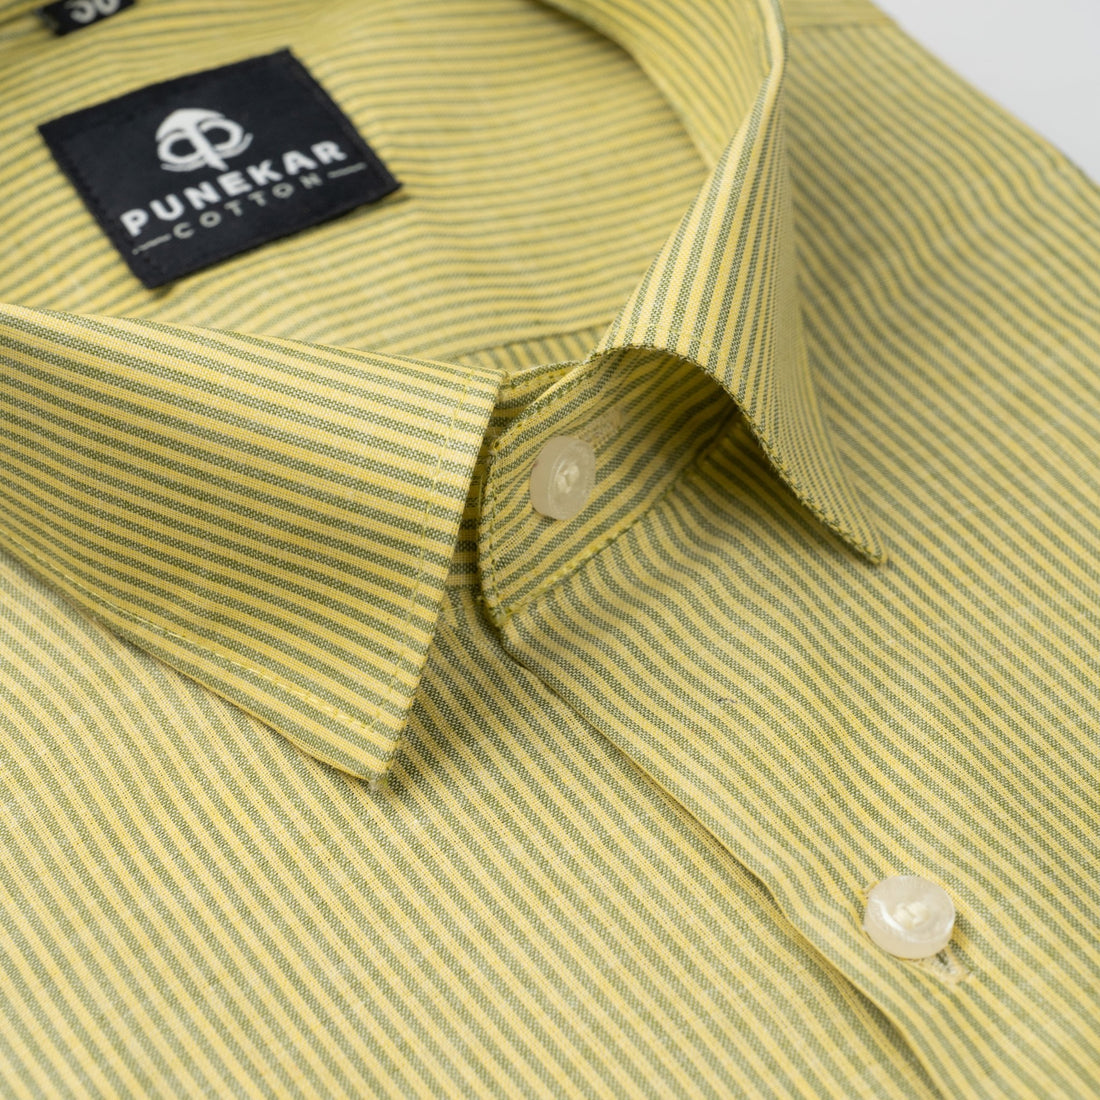 Light Yellow Color Lining Paper Cotton Shirts For Men - Punekar Cotton